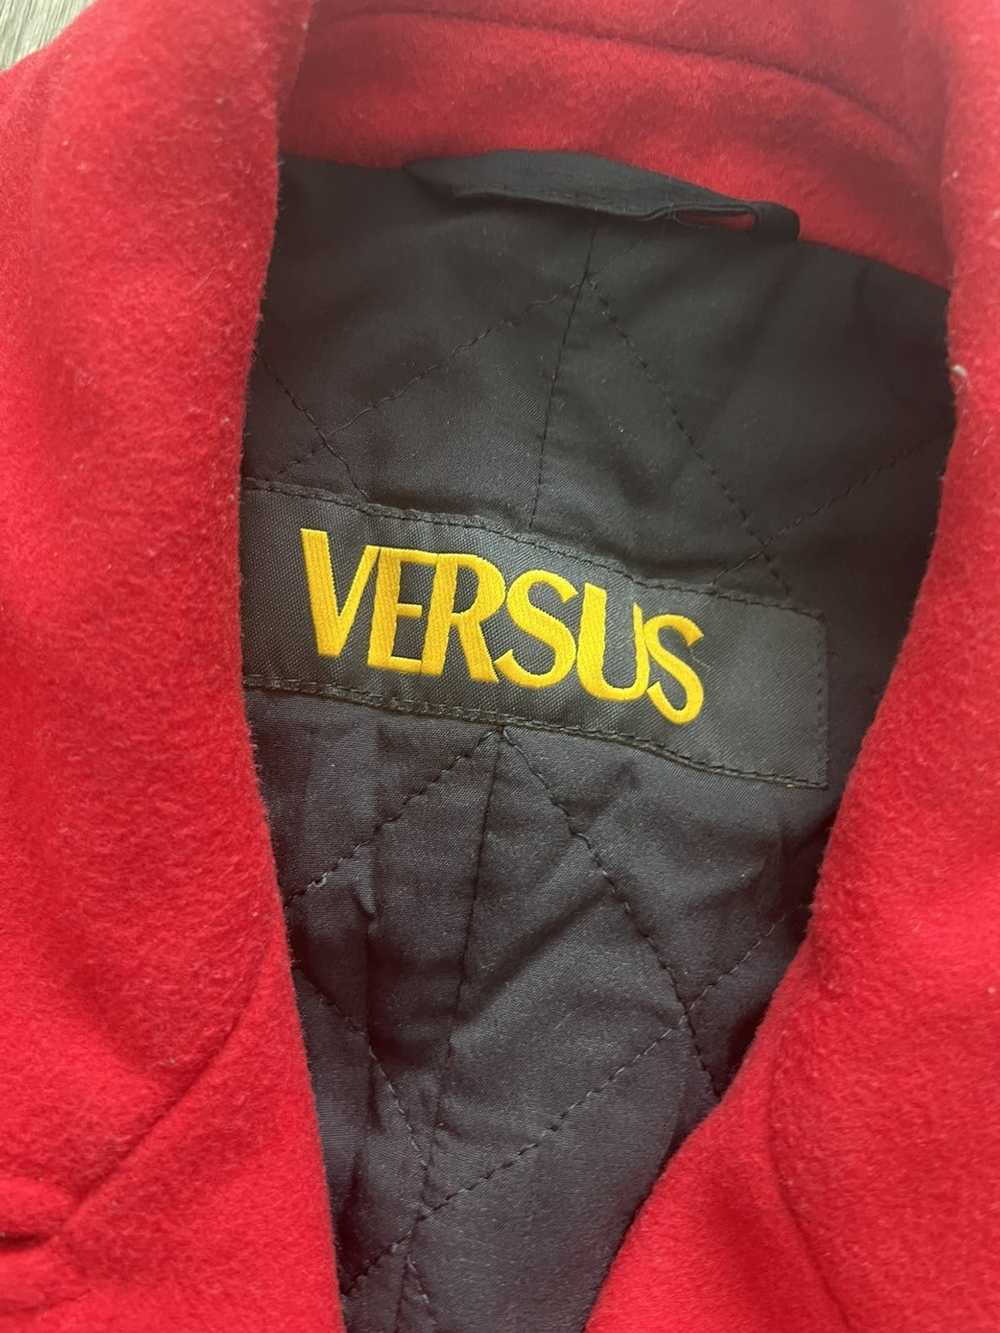 Versus Versace Versace Versus Red Peacoat - image 4